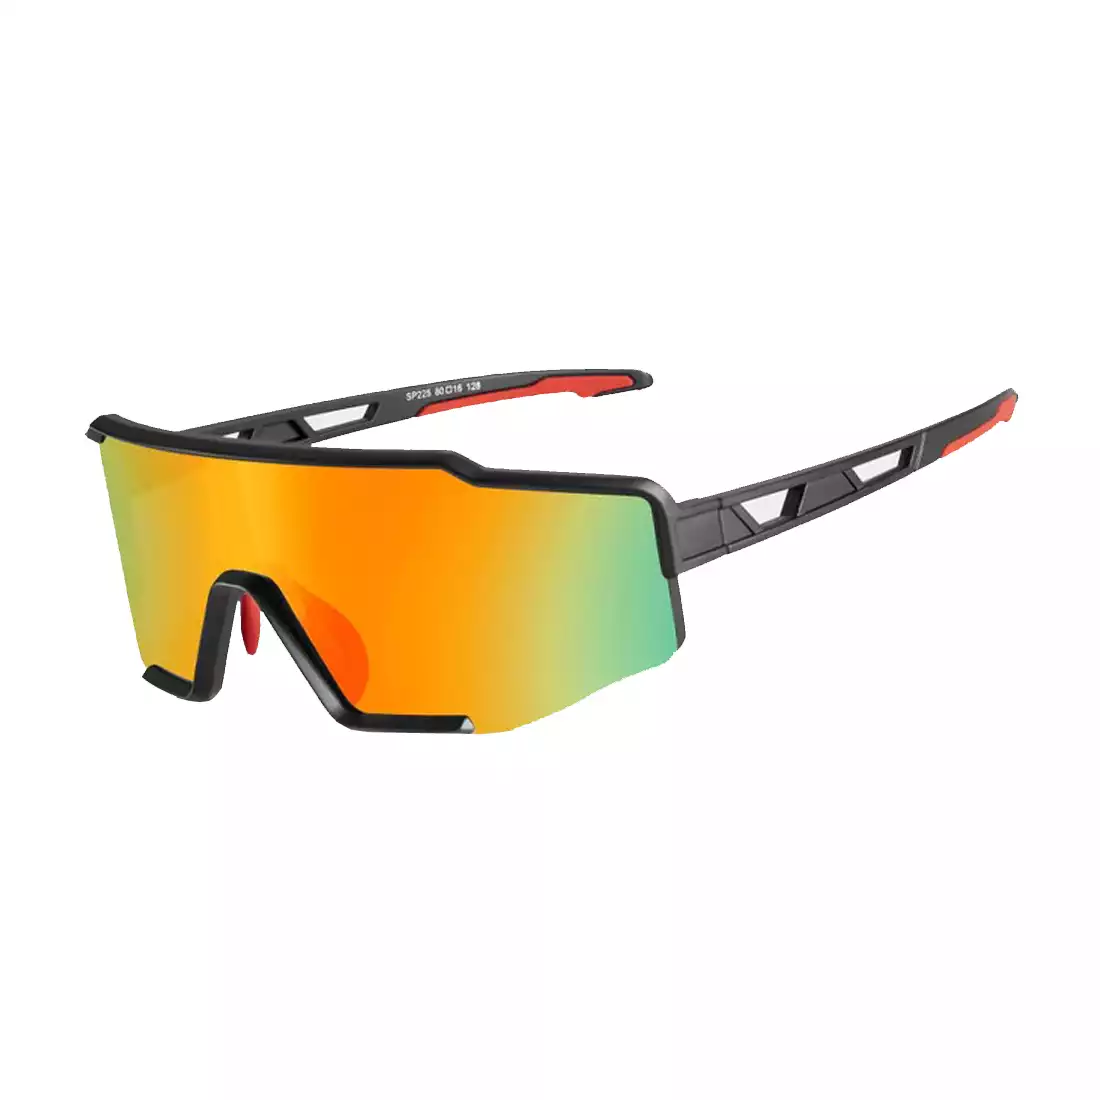 Rockbros SP225BK okulary rowerowe / sportowe z polaryzacją czarno-szare